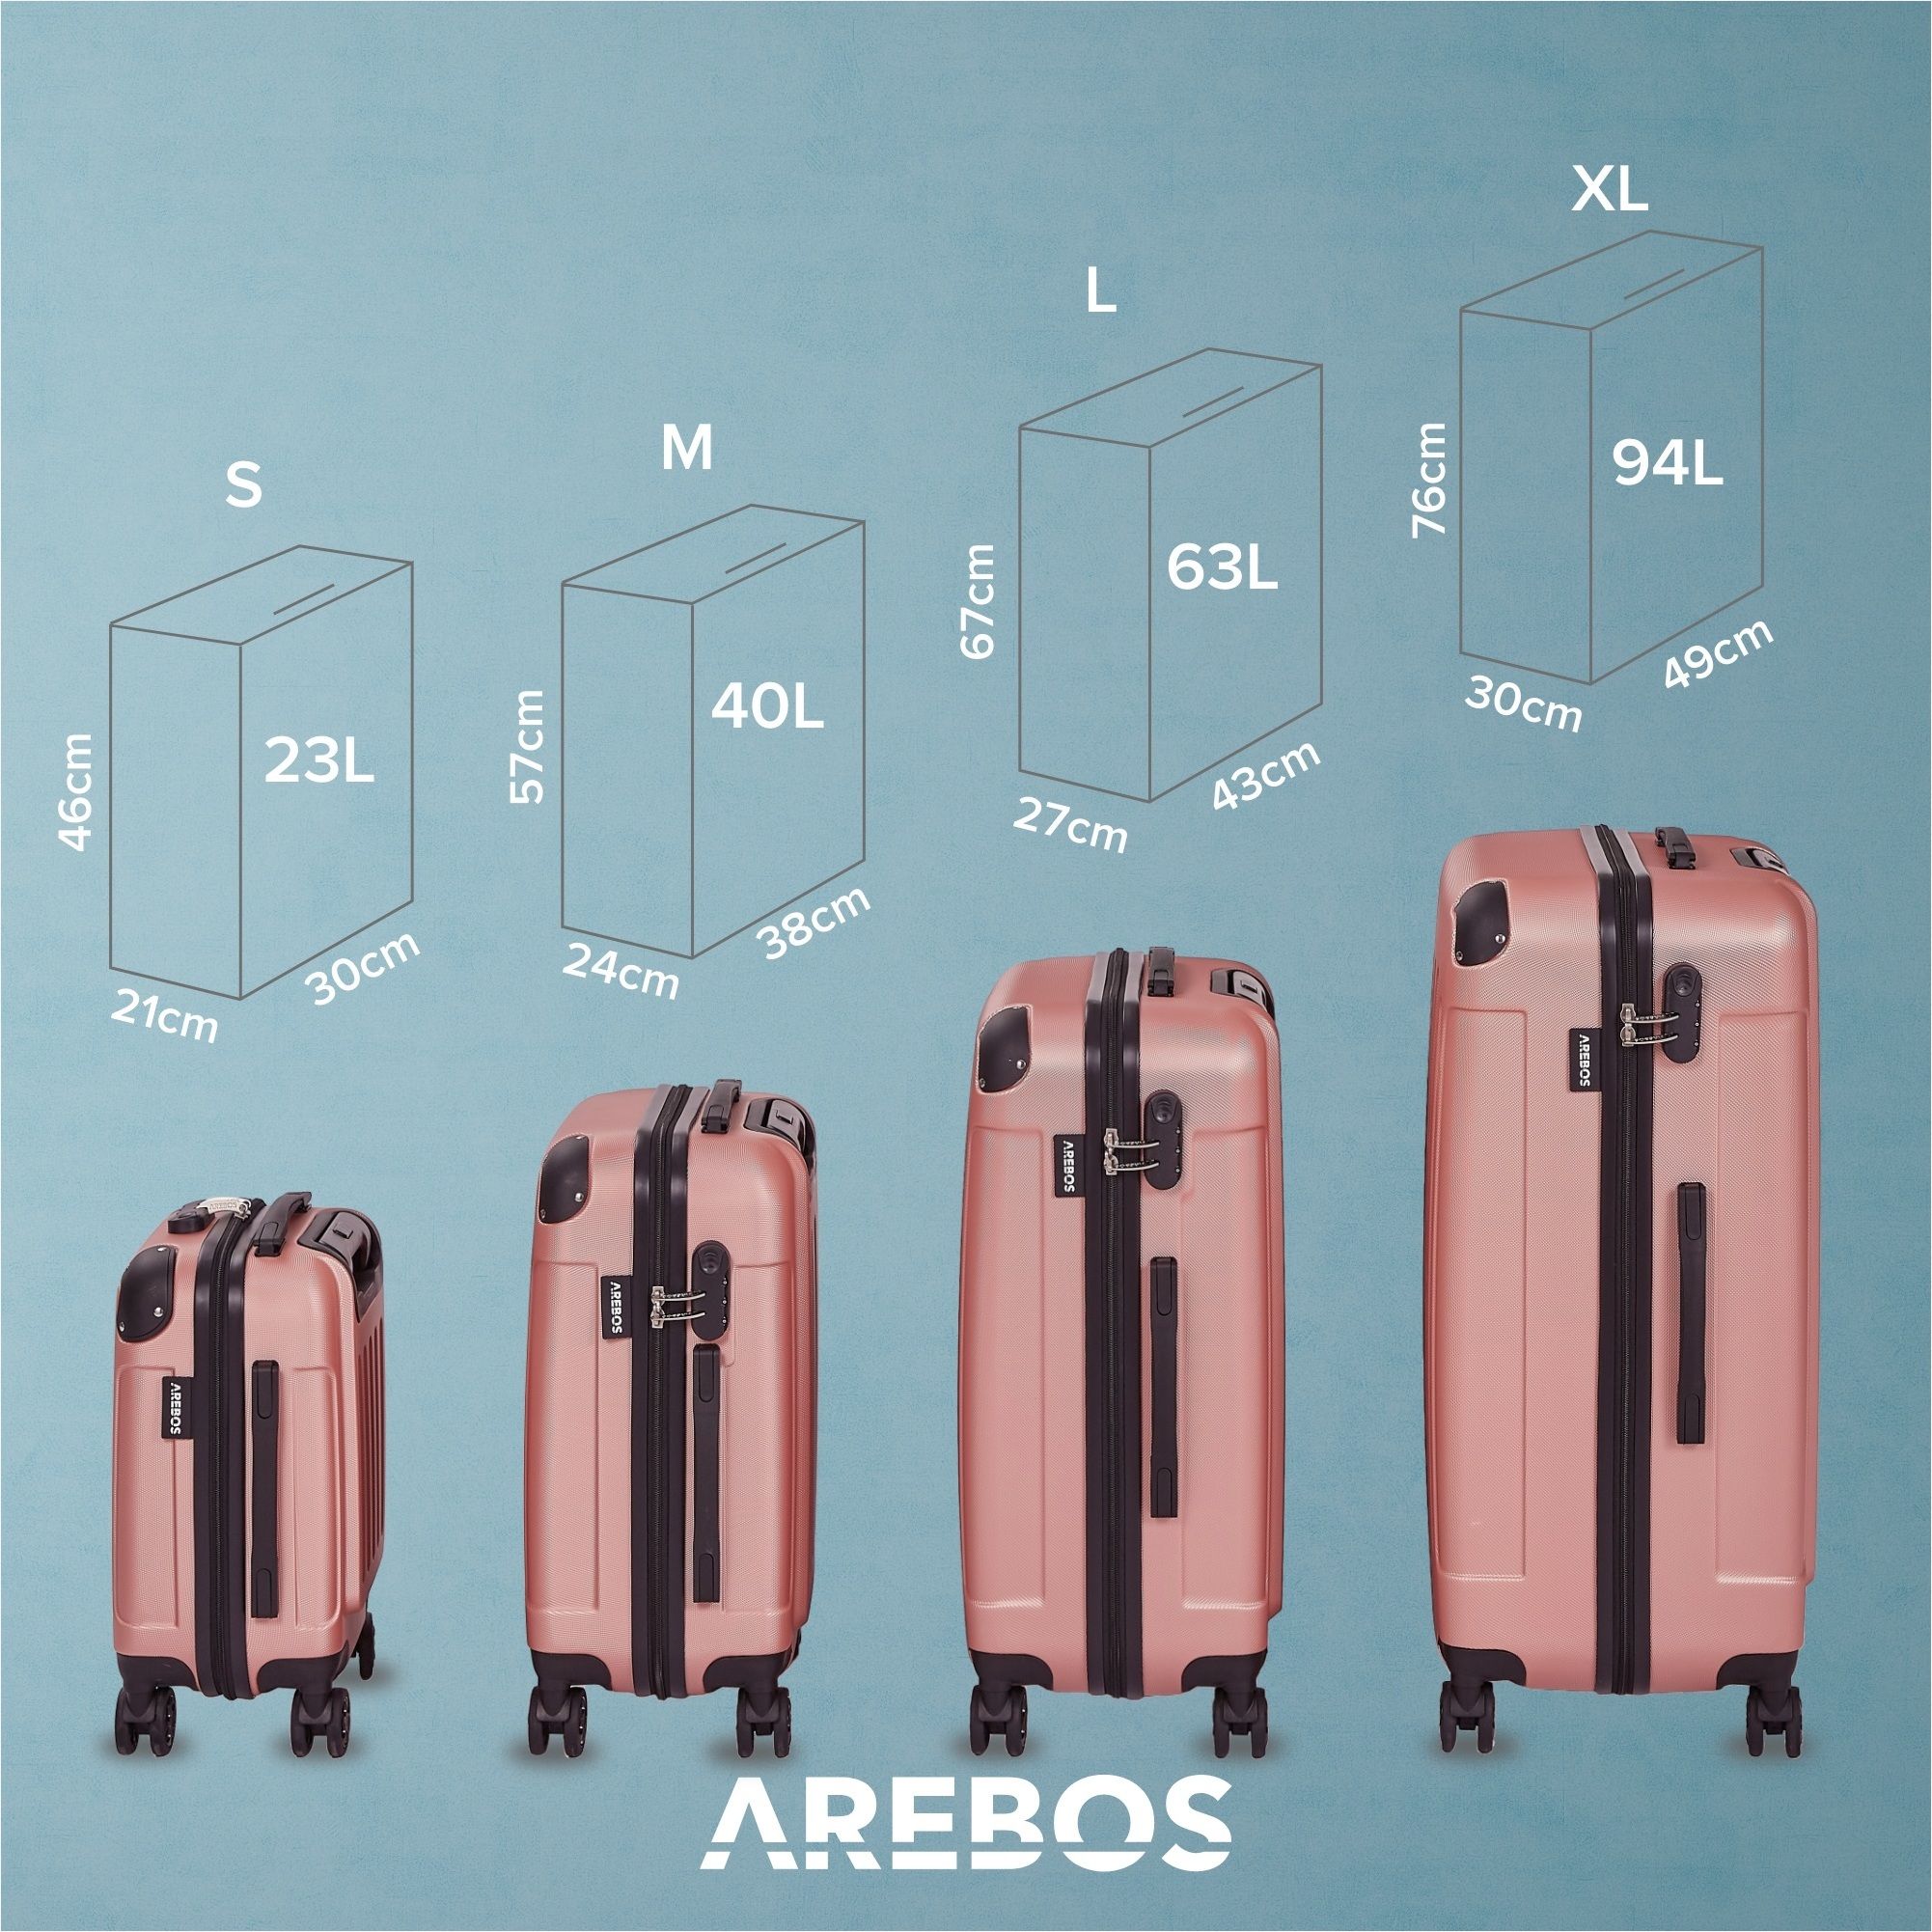 Set de 4 valises de voyage Rosé-or - 4252023112185 - Mallette de voyage